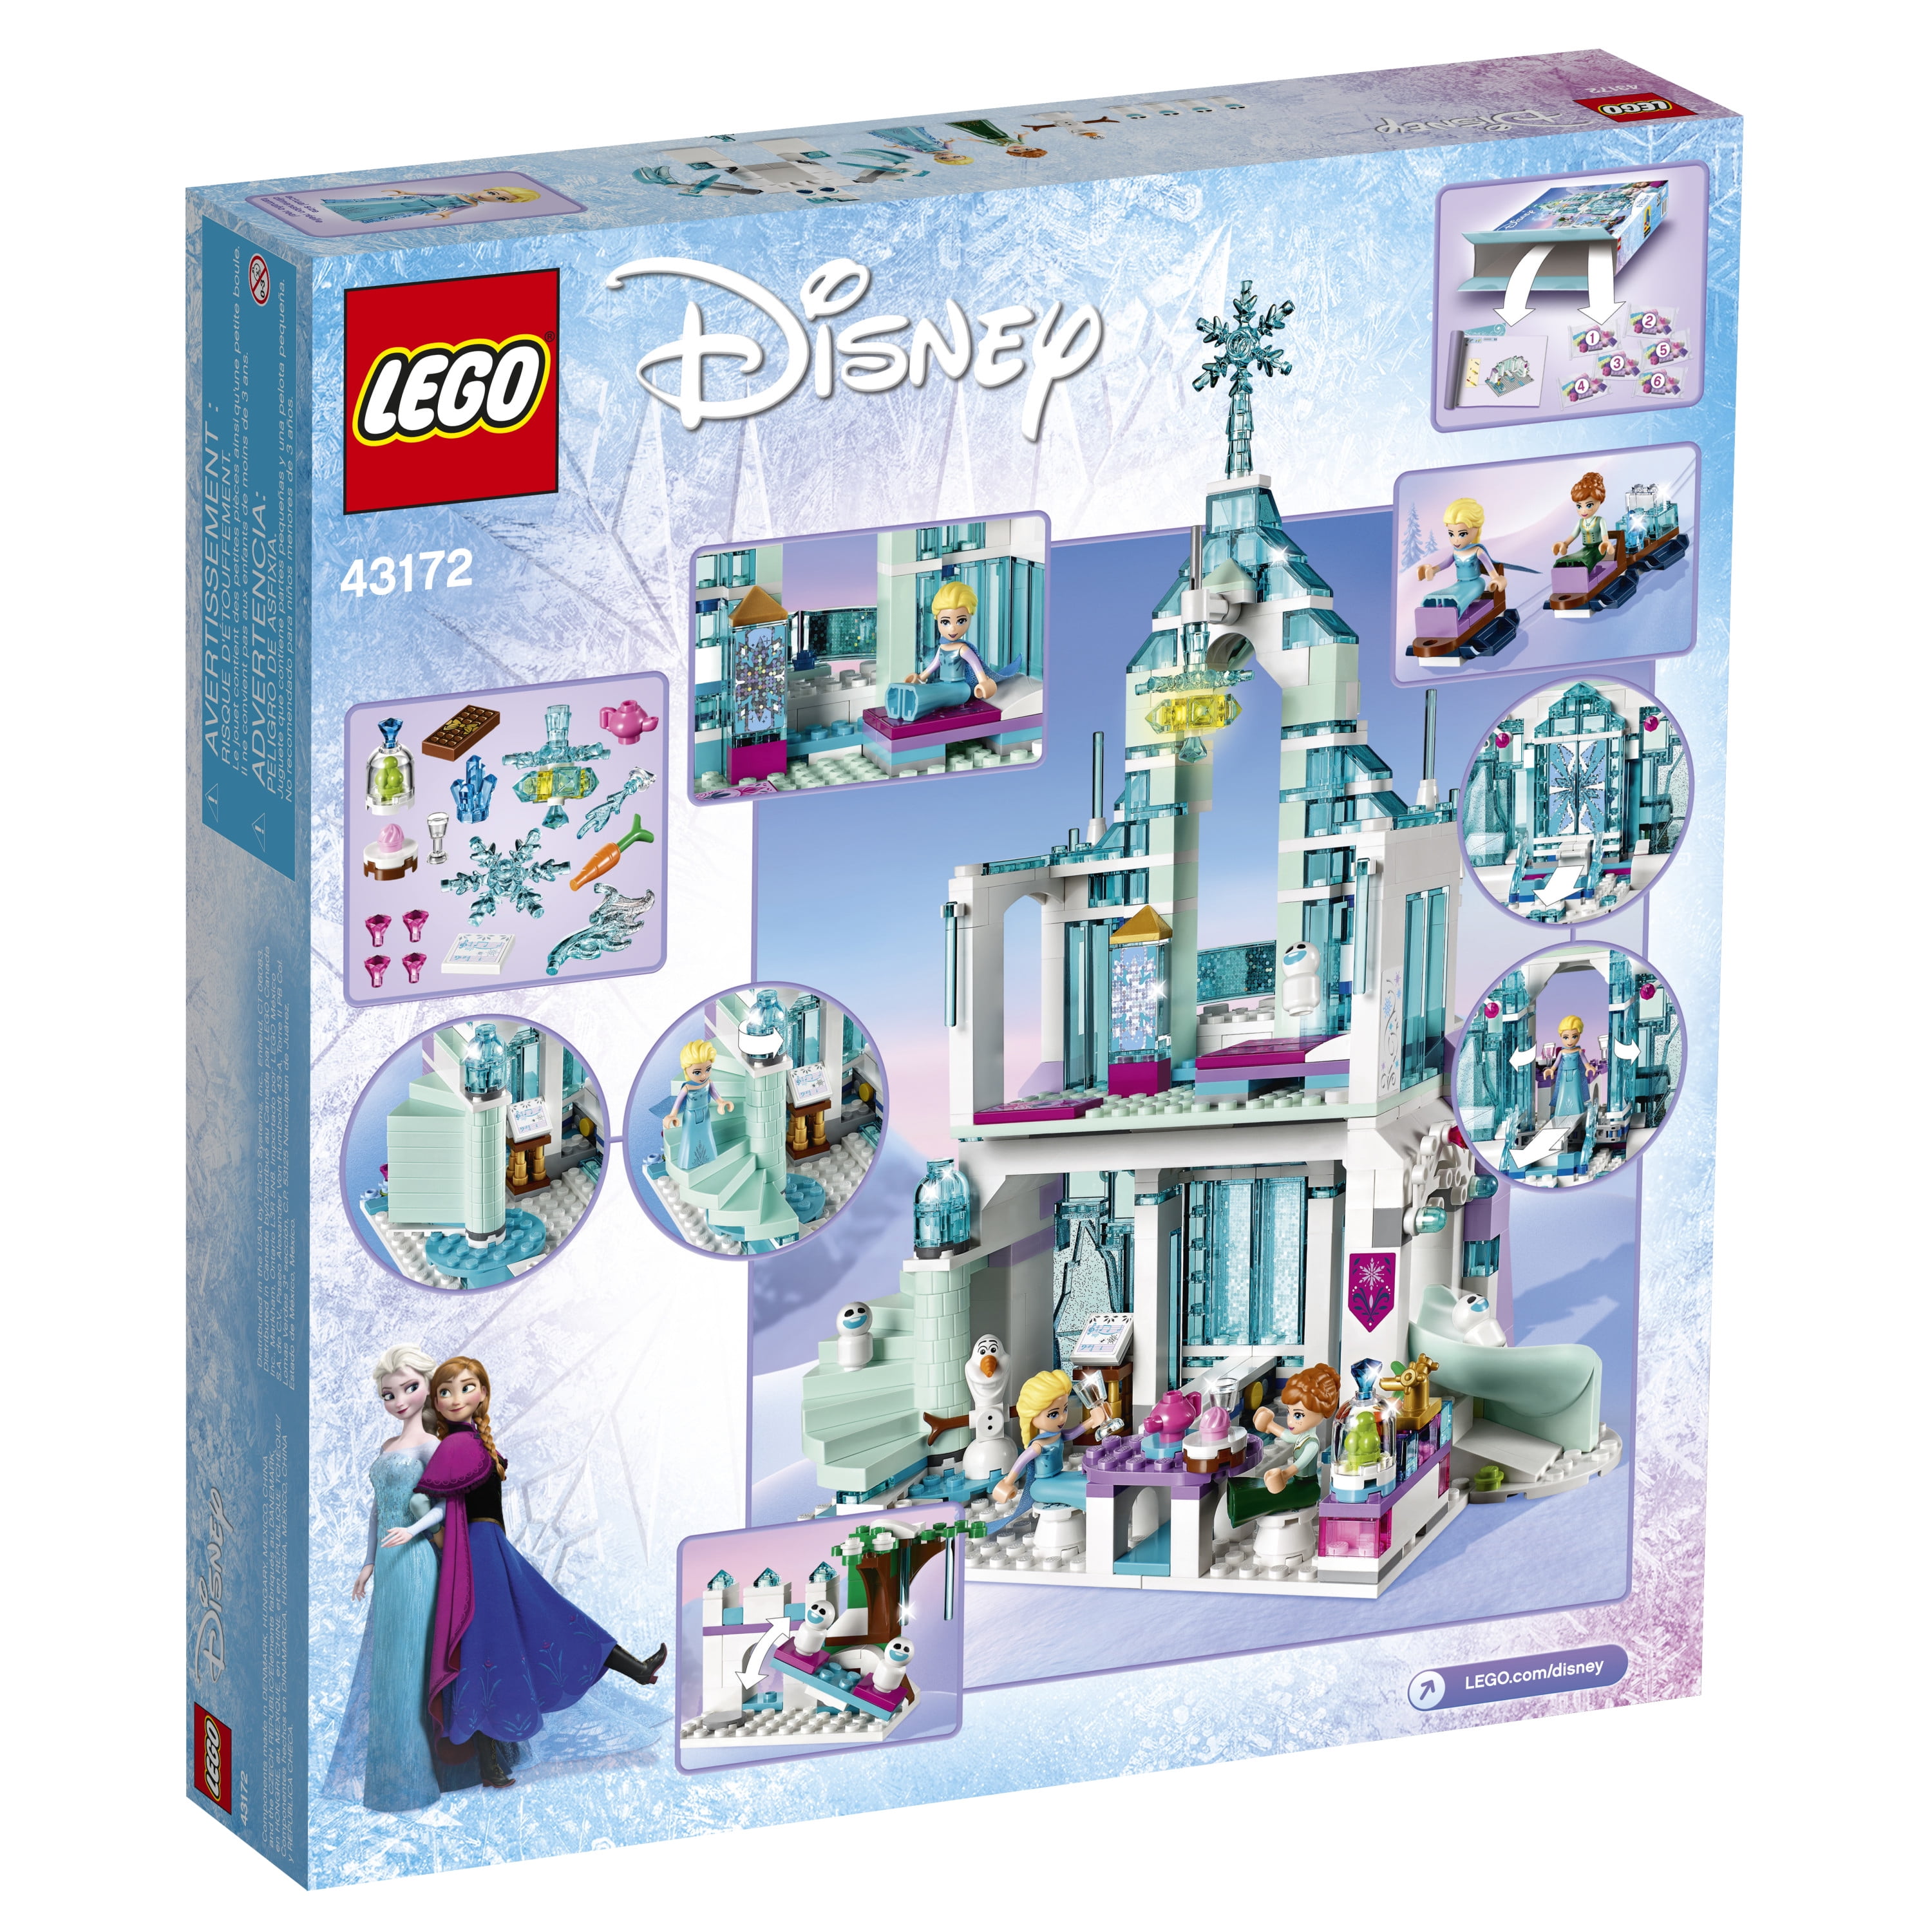 Republikanske parti Præfiks indvirkning LEGO Disney Princess Elsa's Magical Ice Palace 43172 Toy Castle Building  Kit (701 pieces) - Walmart.com